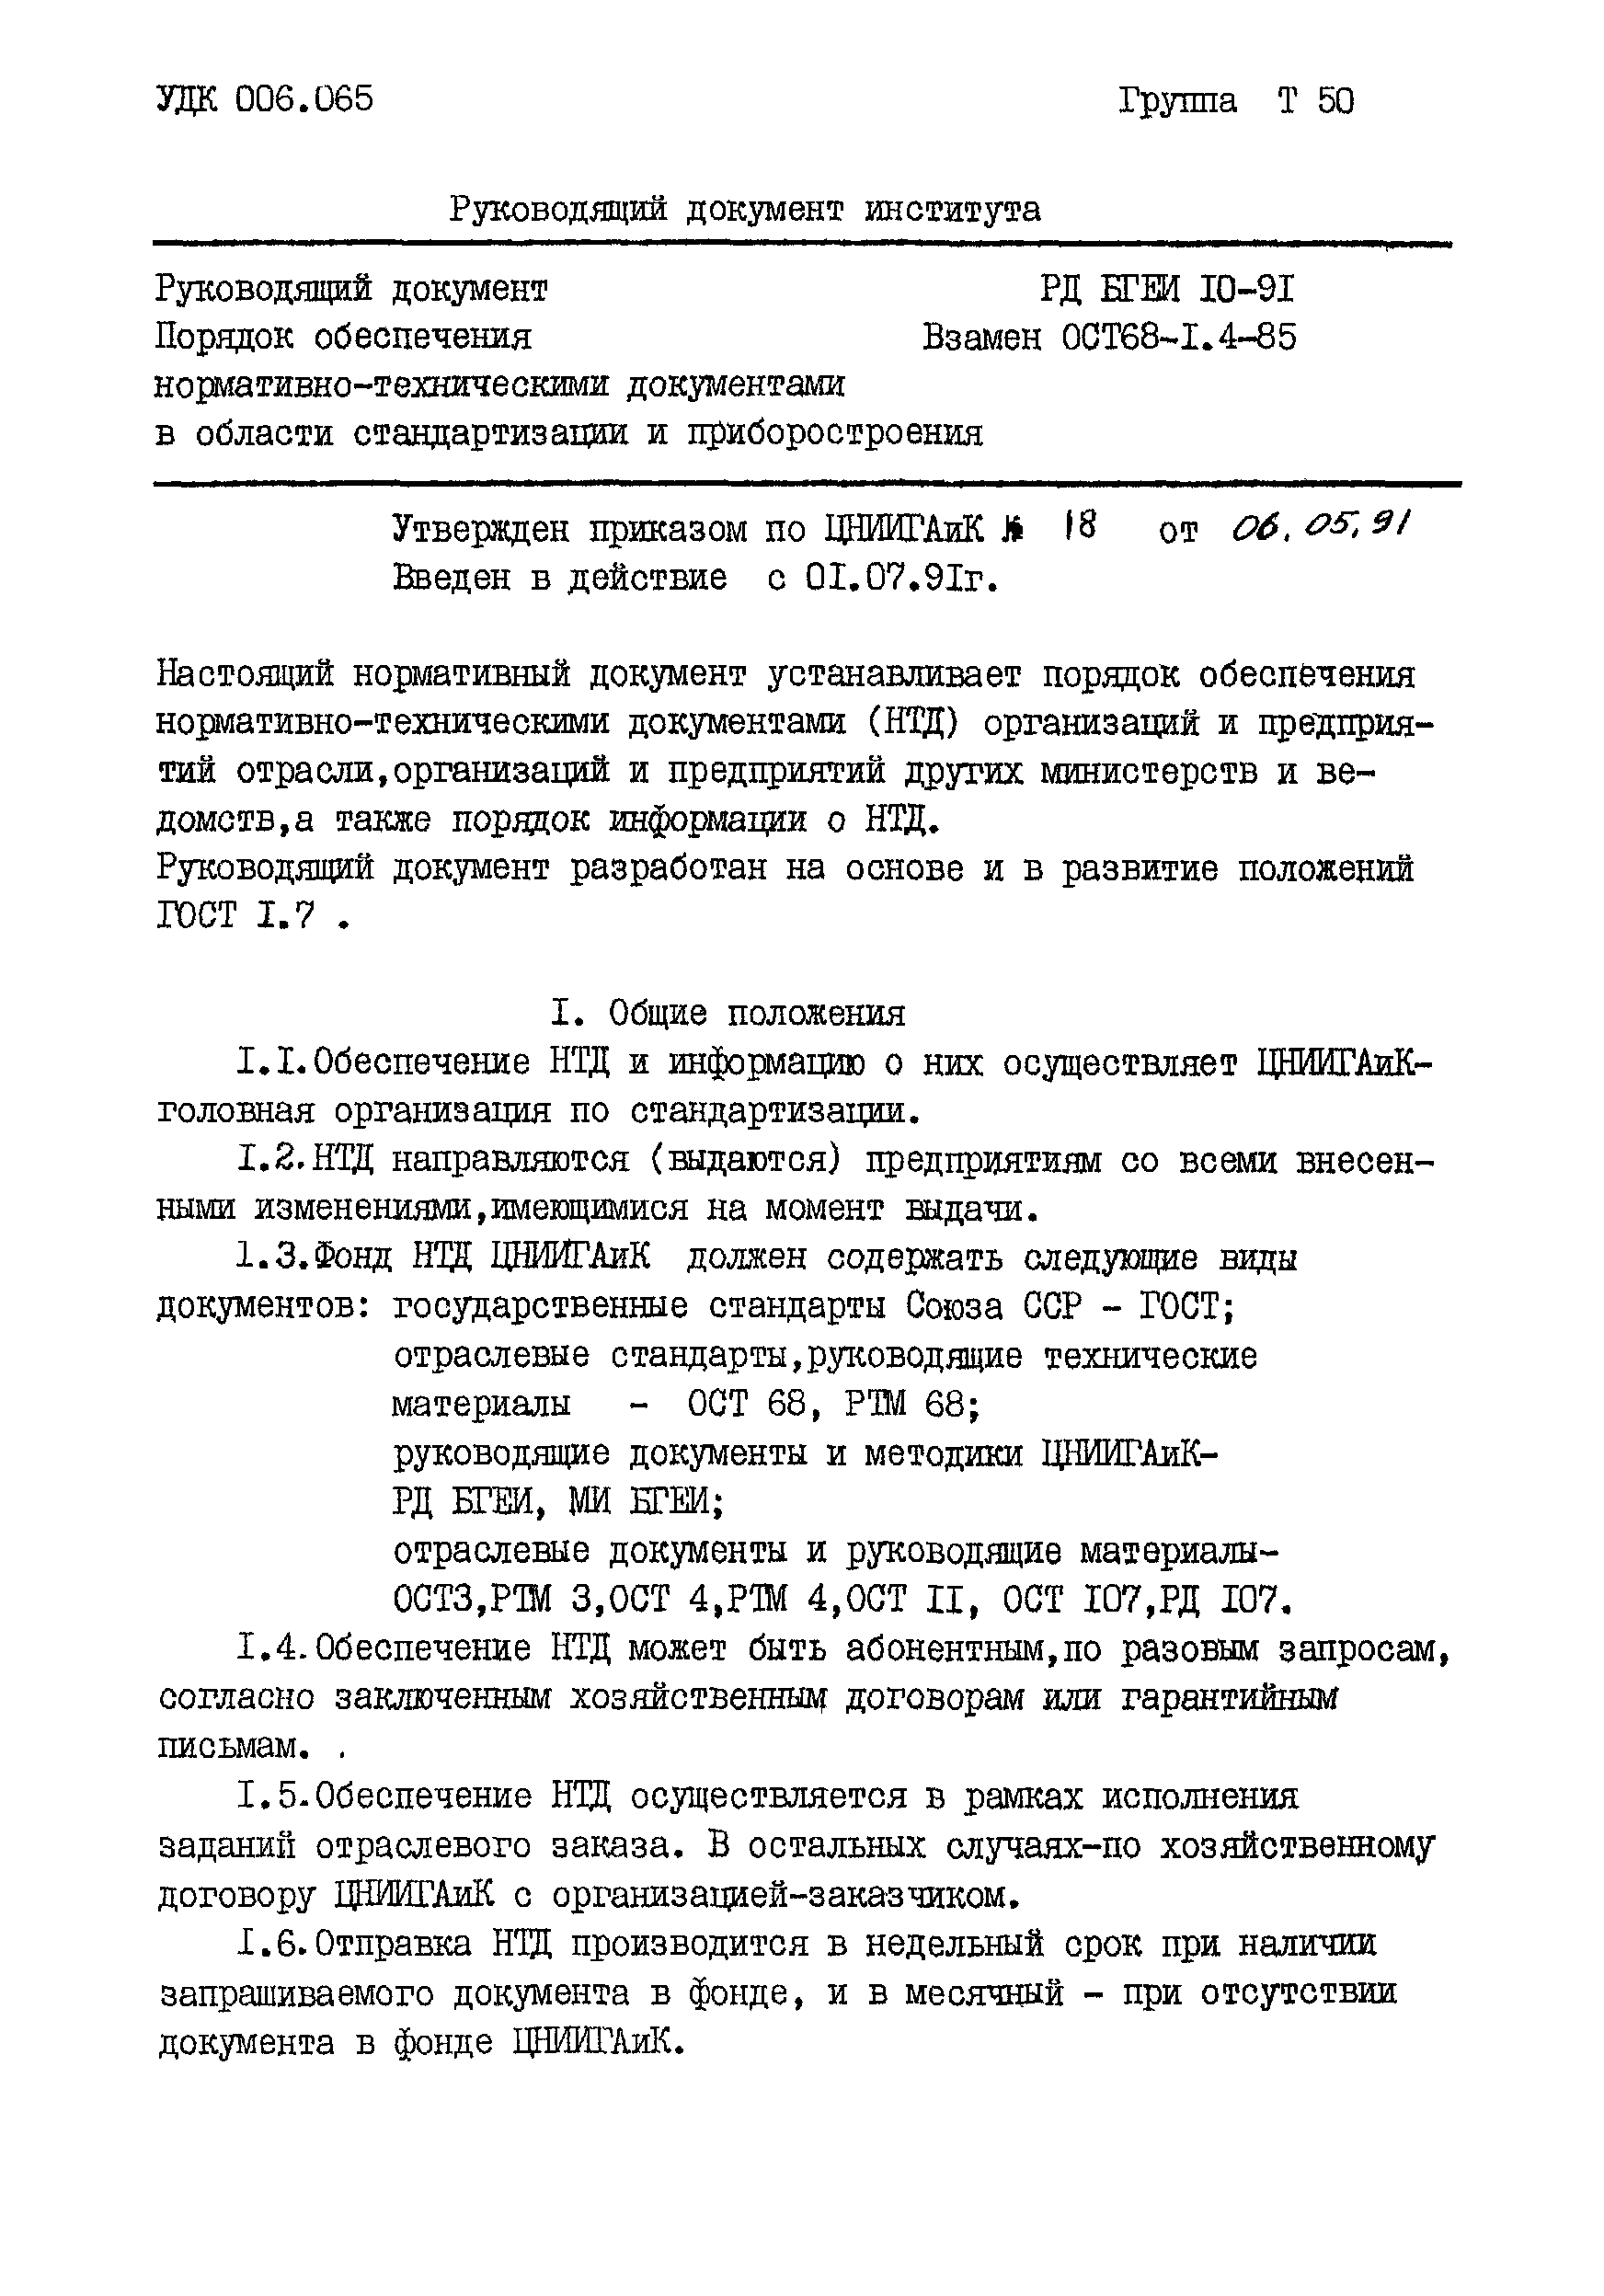 РД БГЕИ 10-91